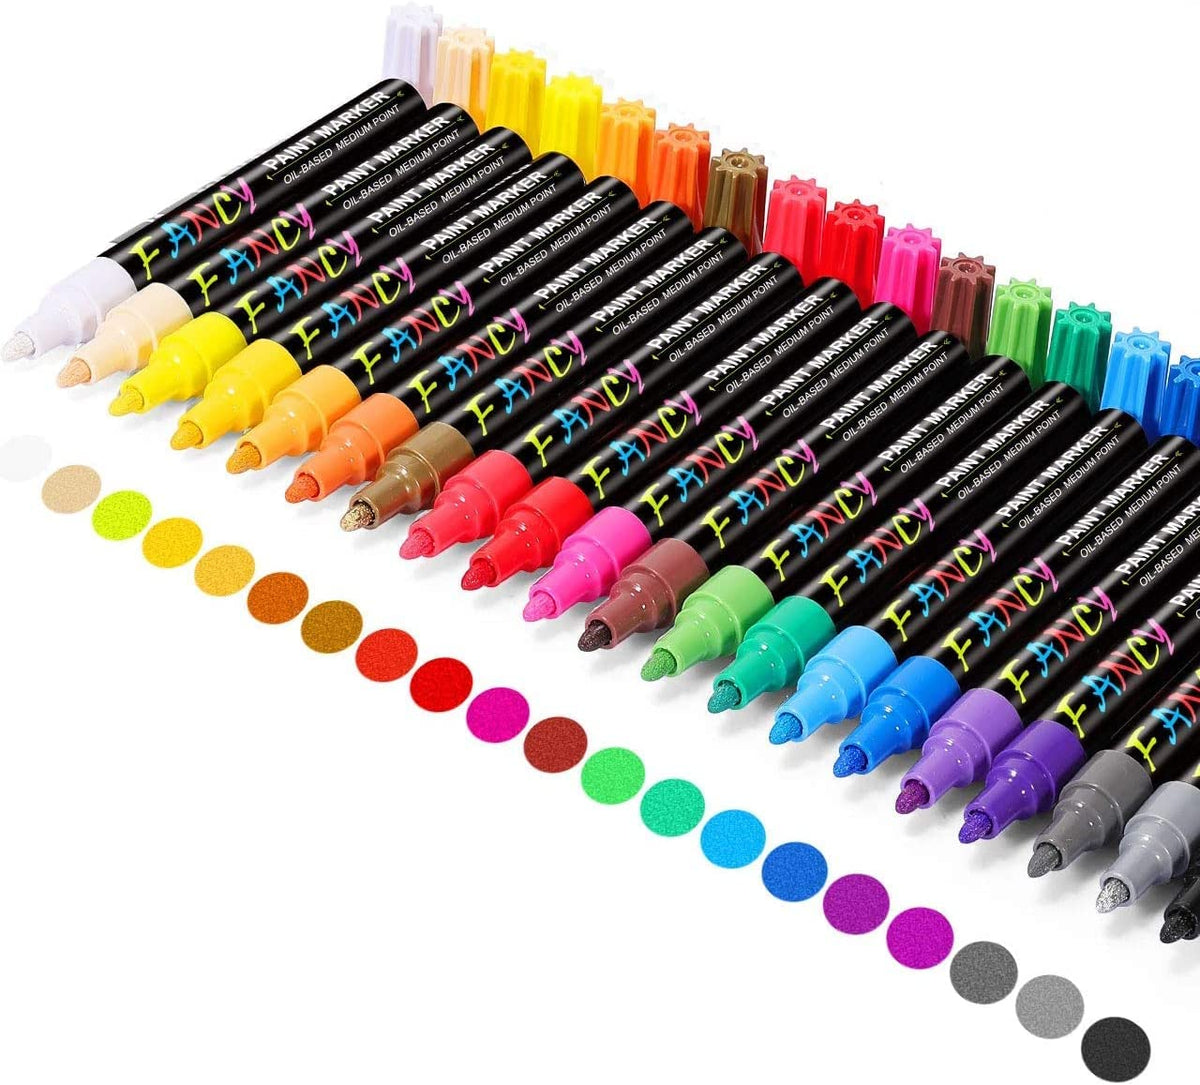 Black Paint Markers Pens - Single Color 6 Pack Permanent Oil Based Paint Pen,  Me